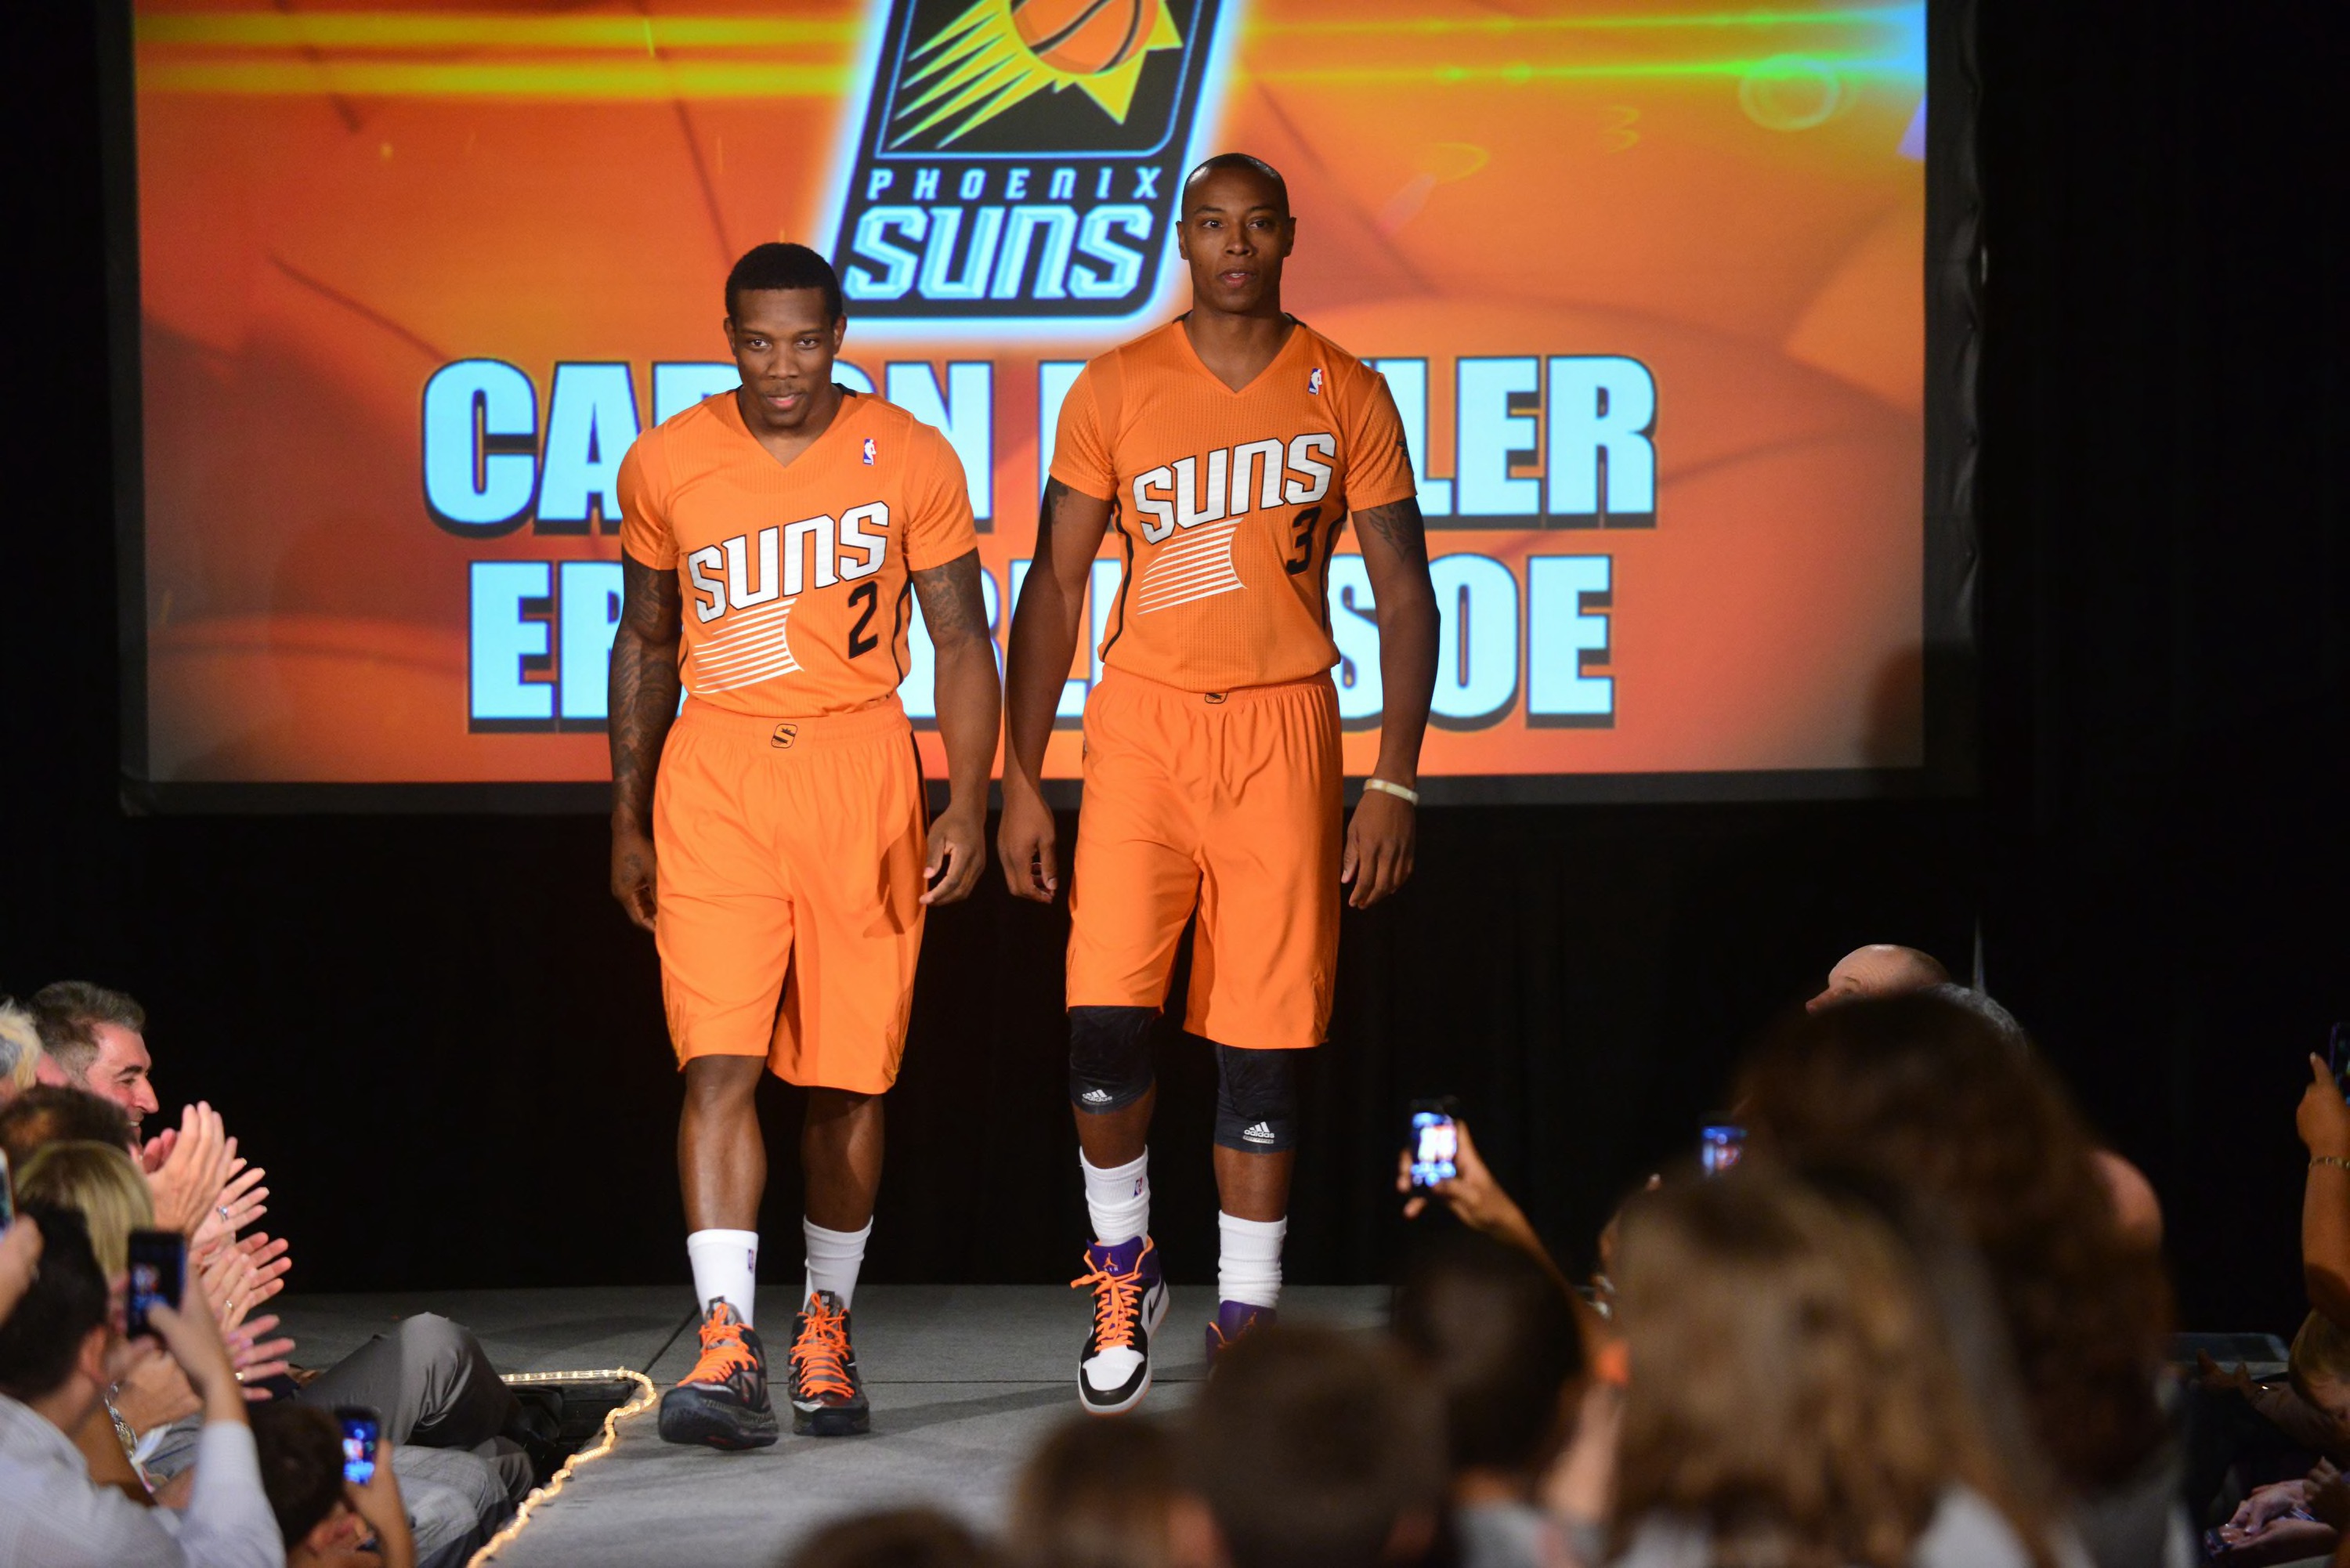 Phoenix Suns Go All-In on Orange, Unveil New Statement Uniform